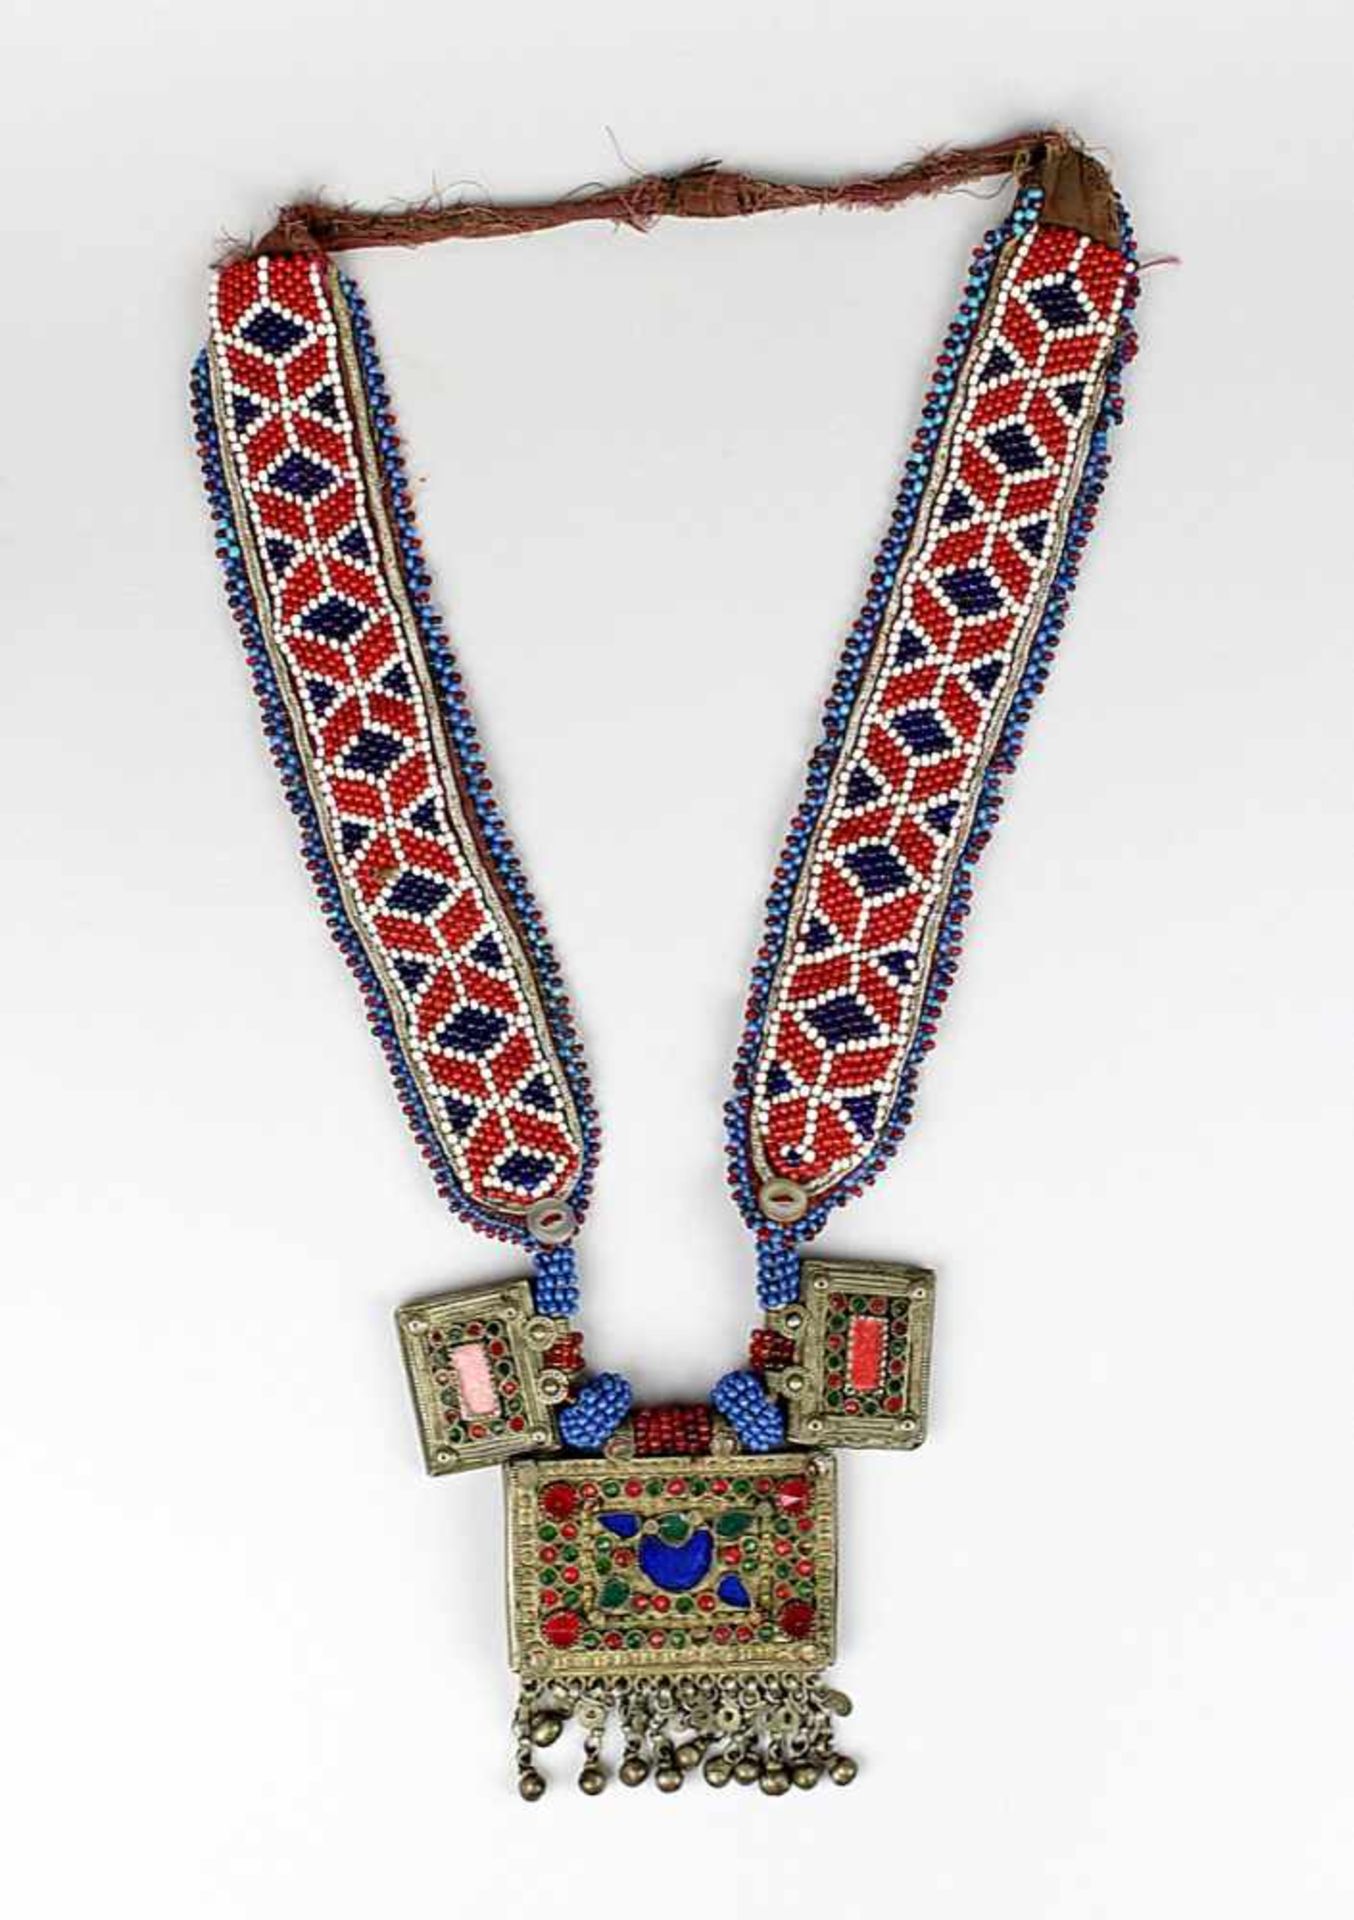 Halskette der Kutschi-Nomaden, Afghanistan Anfang 20. Jh., mit einem zentralen großen und seitlich